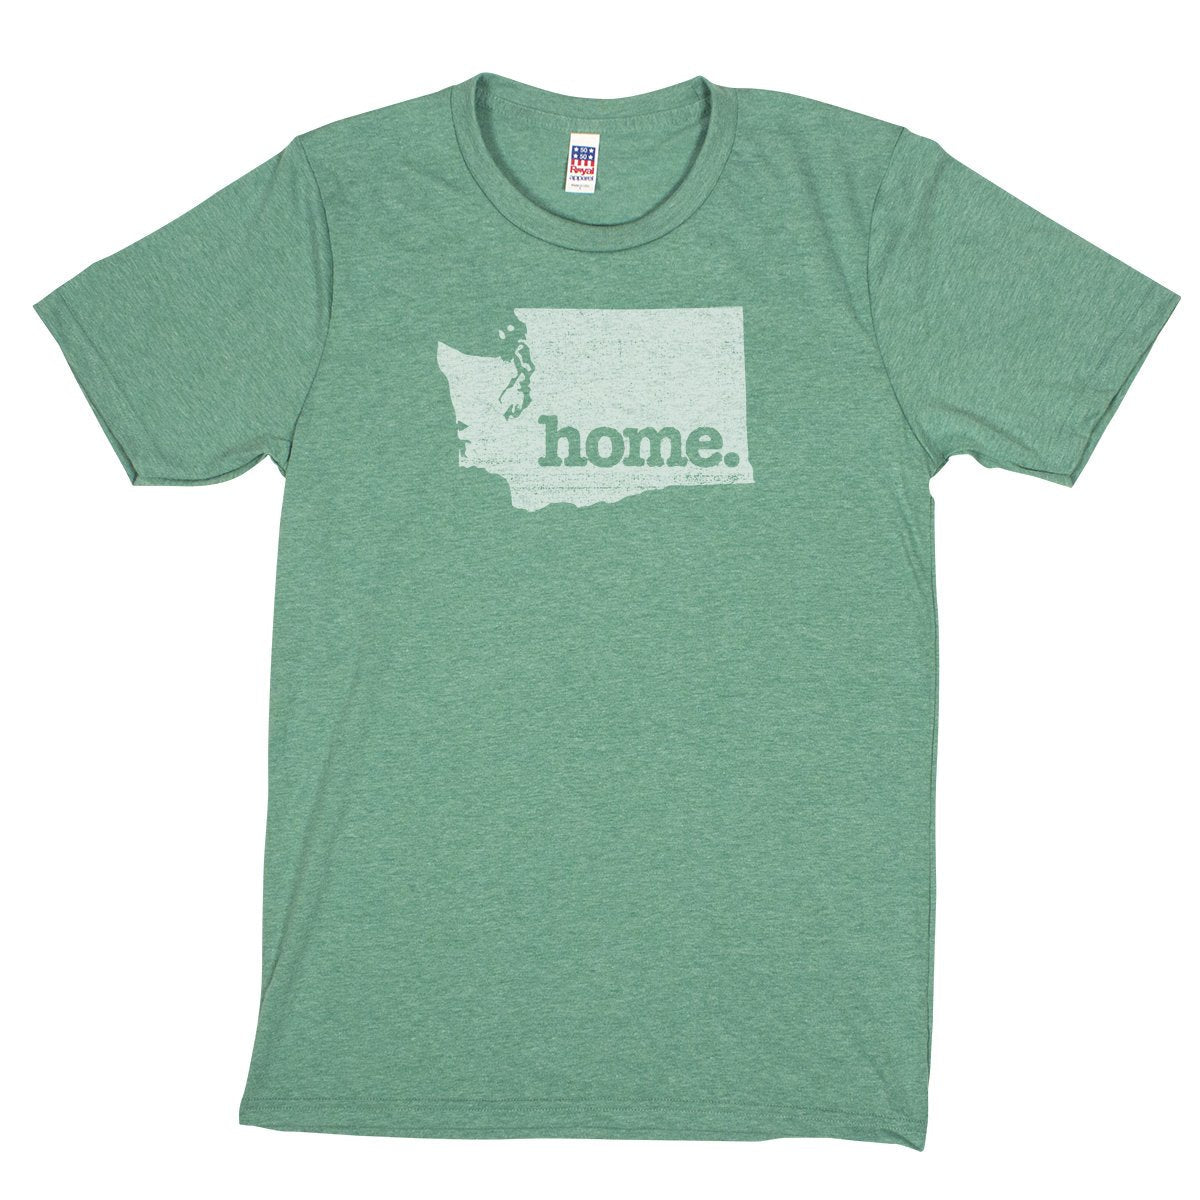 home. Men’s Unisex T-Shirt - St Croix